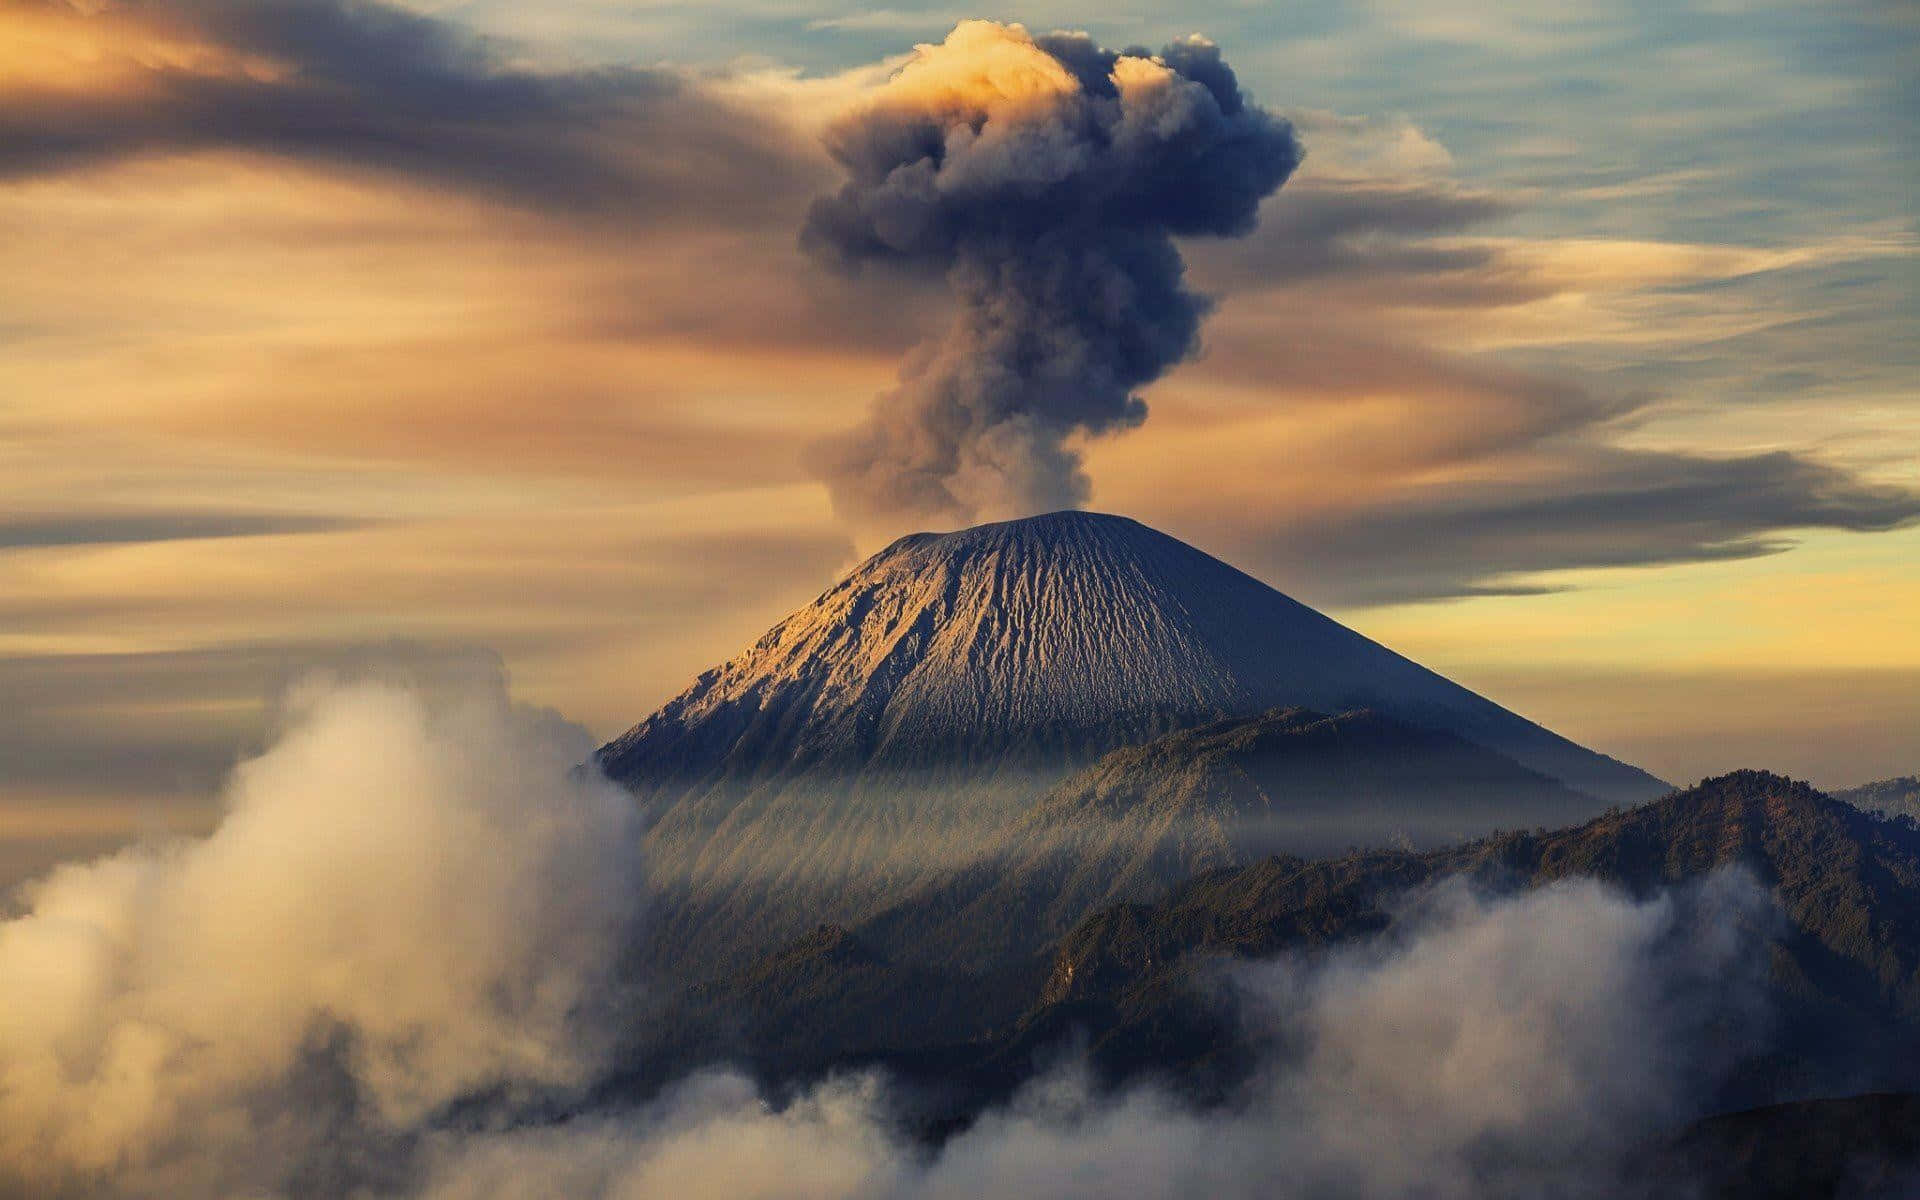 Majestic Semeru Volcano Erupting in Indonesia Wallpaper